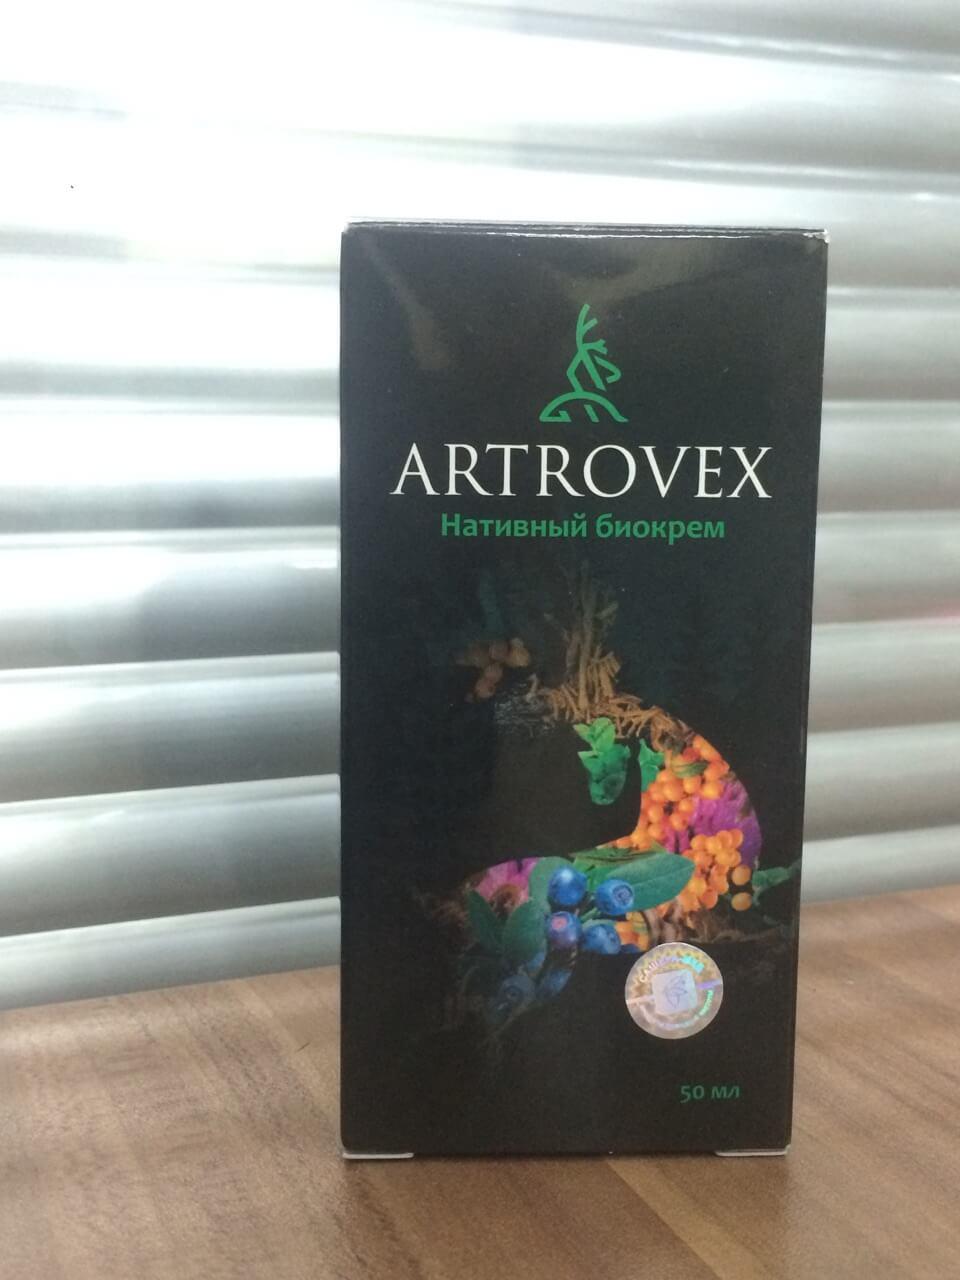 Аптека: artrovex в Москве